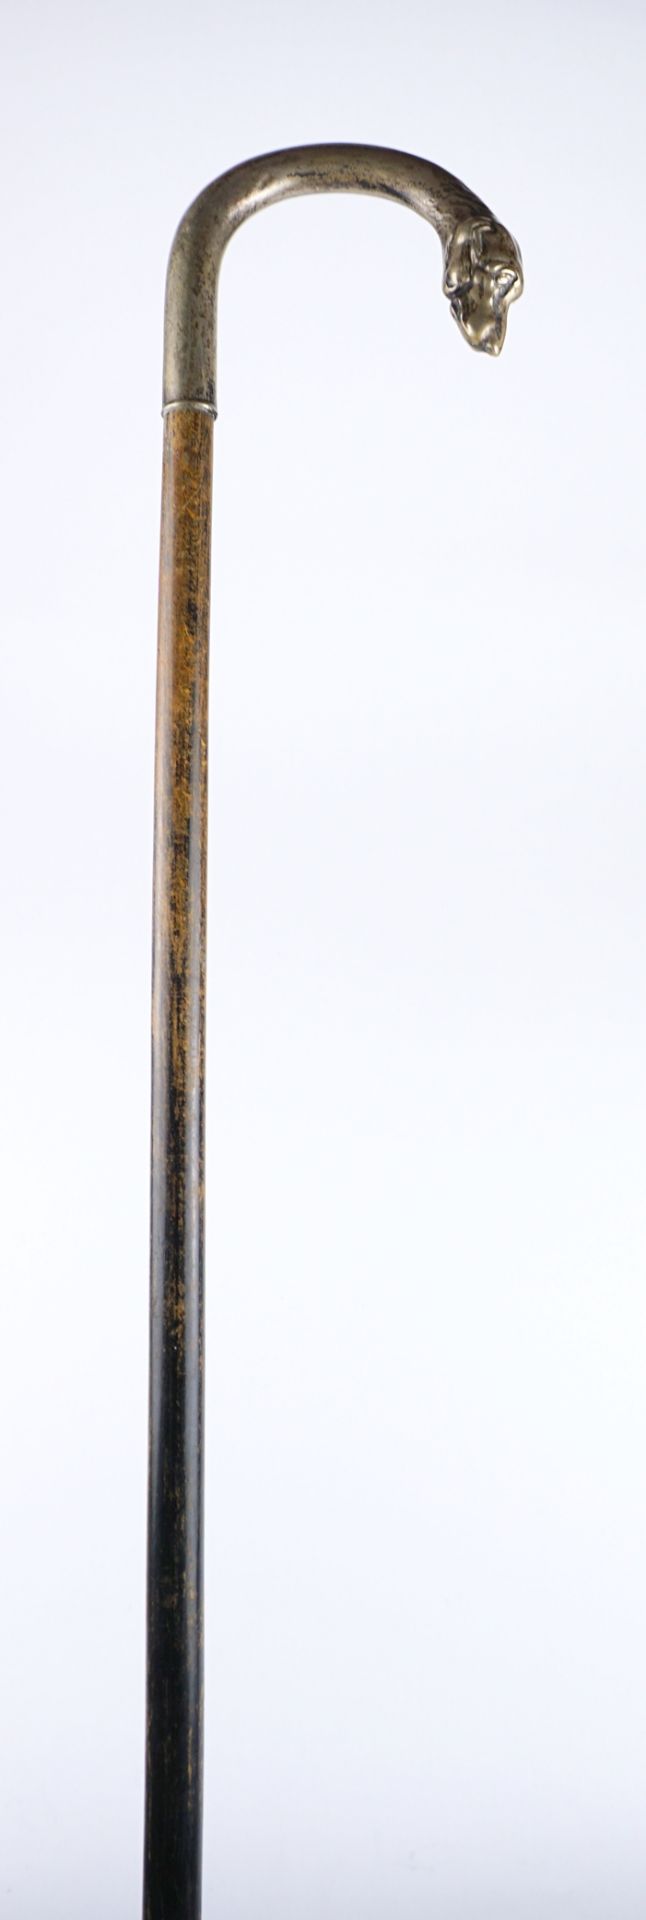 Figürlicher Gehstock in Form eines Hundekopfs, Alpacca-Silber, Anf. 20.Jh. - Bild 3 aus 3